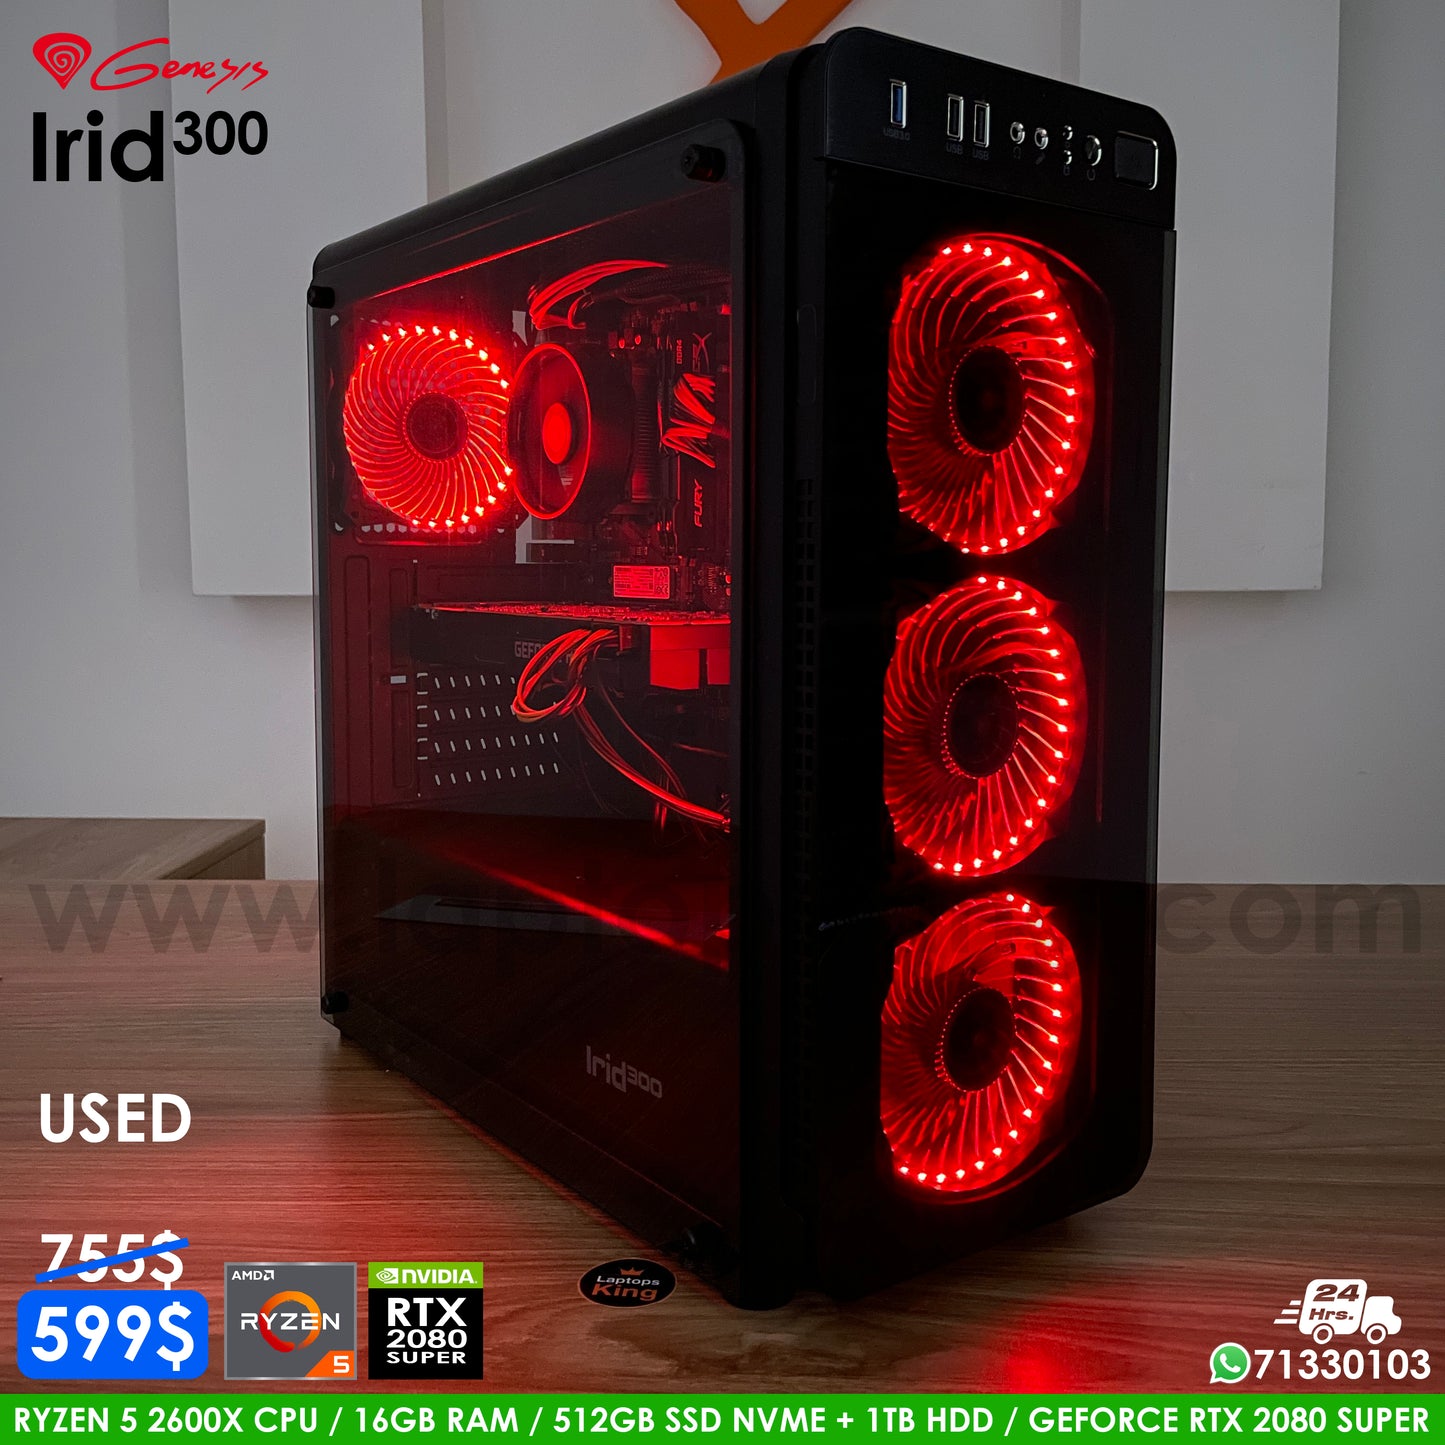 Genesis Irid 300 Ryzen 5 Rtx 2080 Super | Red | Gaming Desktop Computer (Used Very Clean)